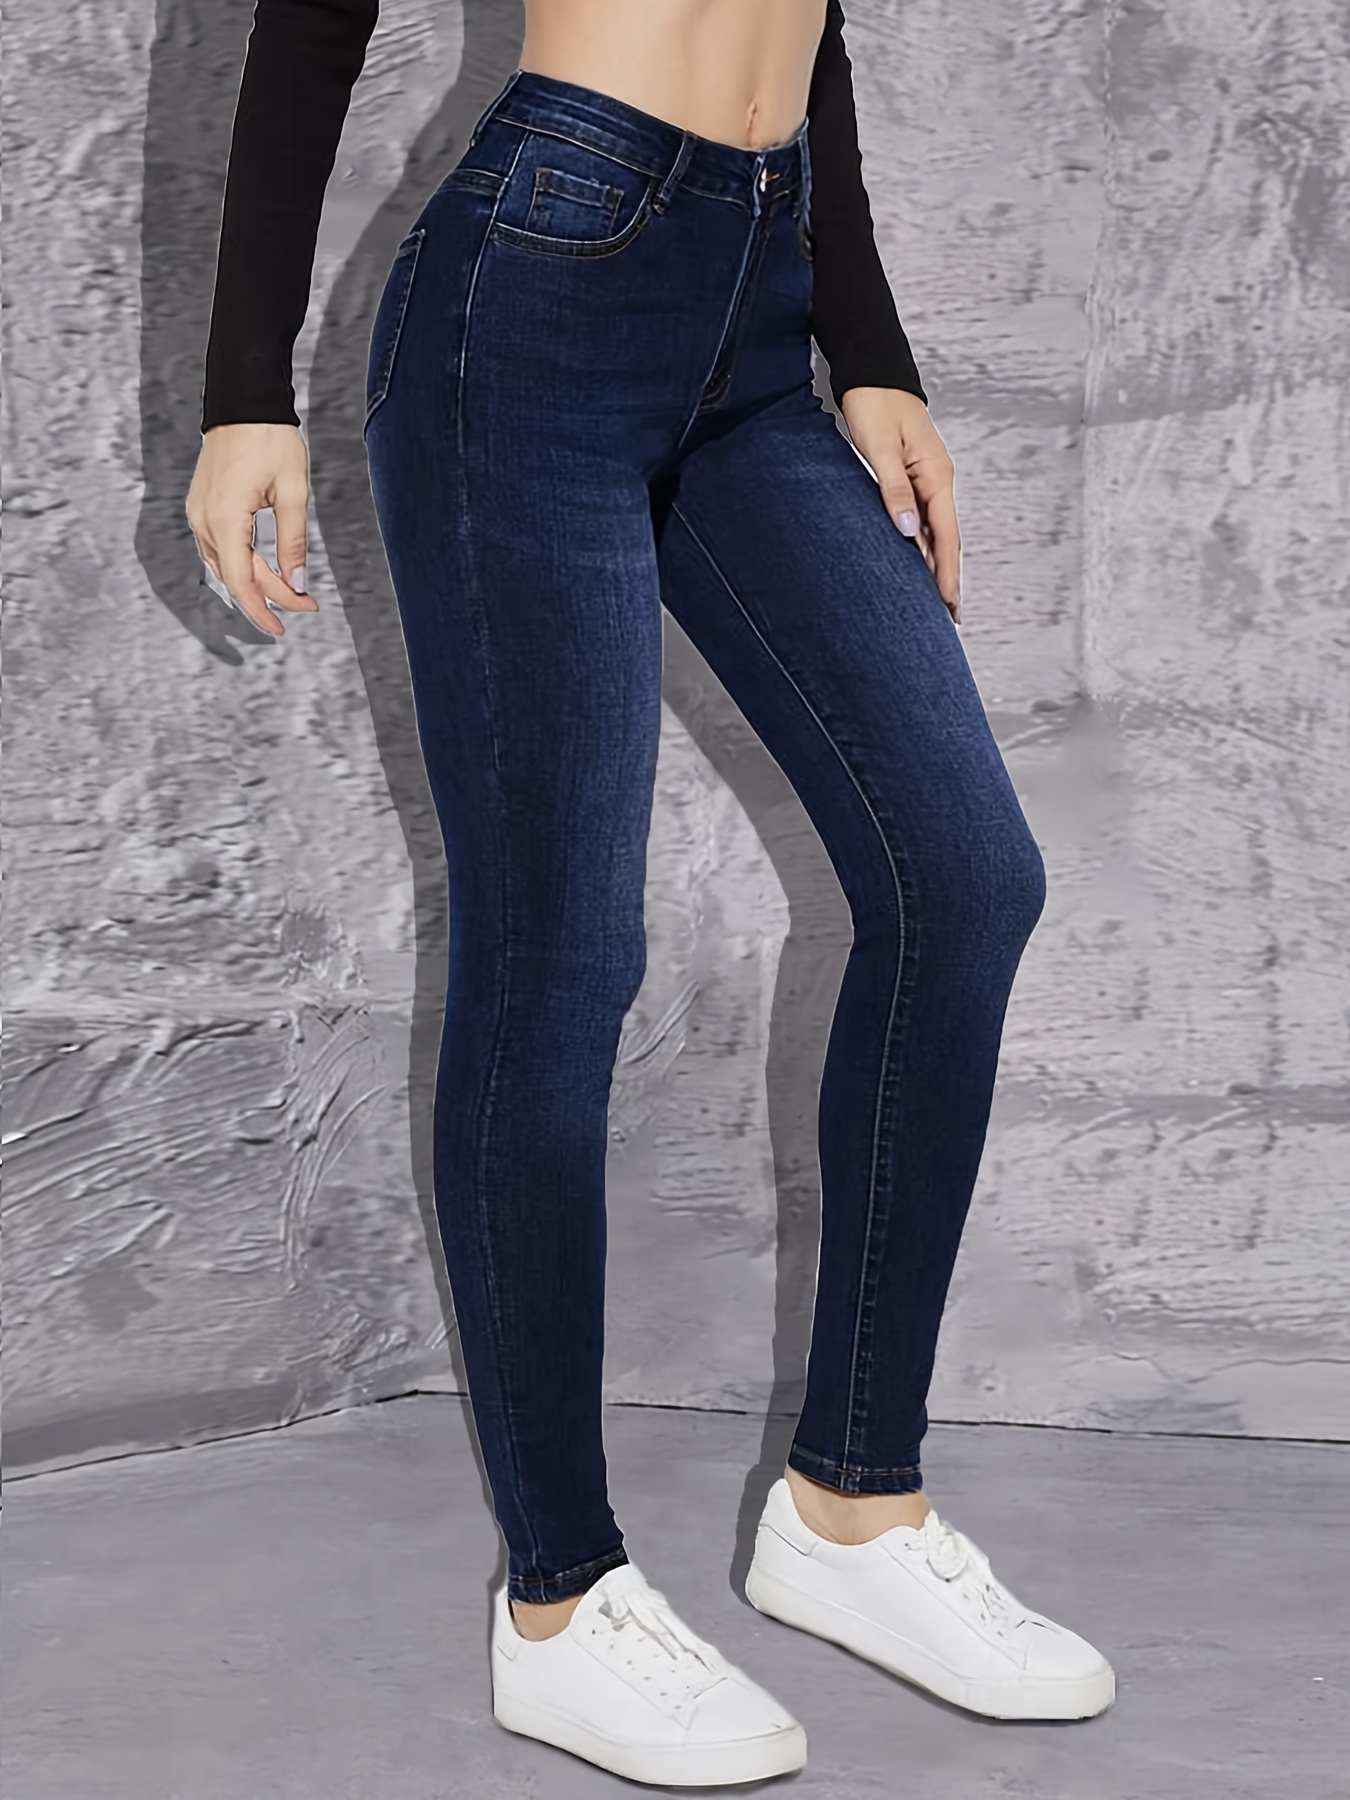 Jeans ajustados * oscuro de tiro alto, pantalones de mezclilla ajustados  elásticos de diseño liso de cintura alta, jeans y ropa de mezclilla para m